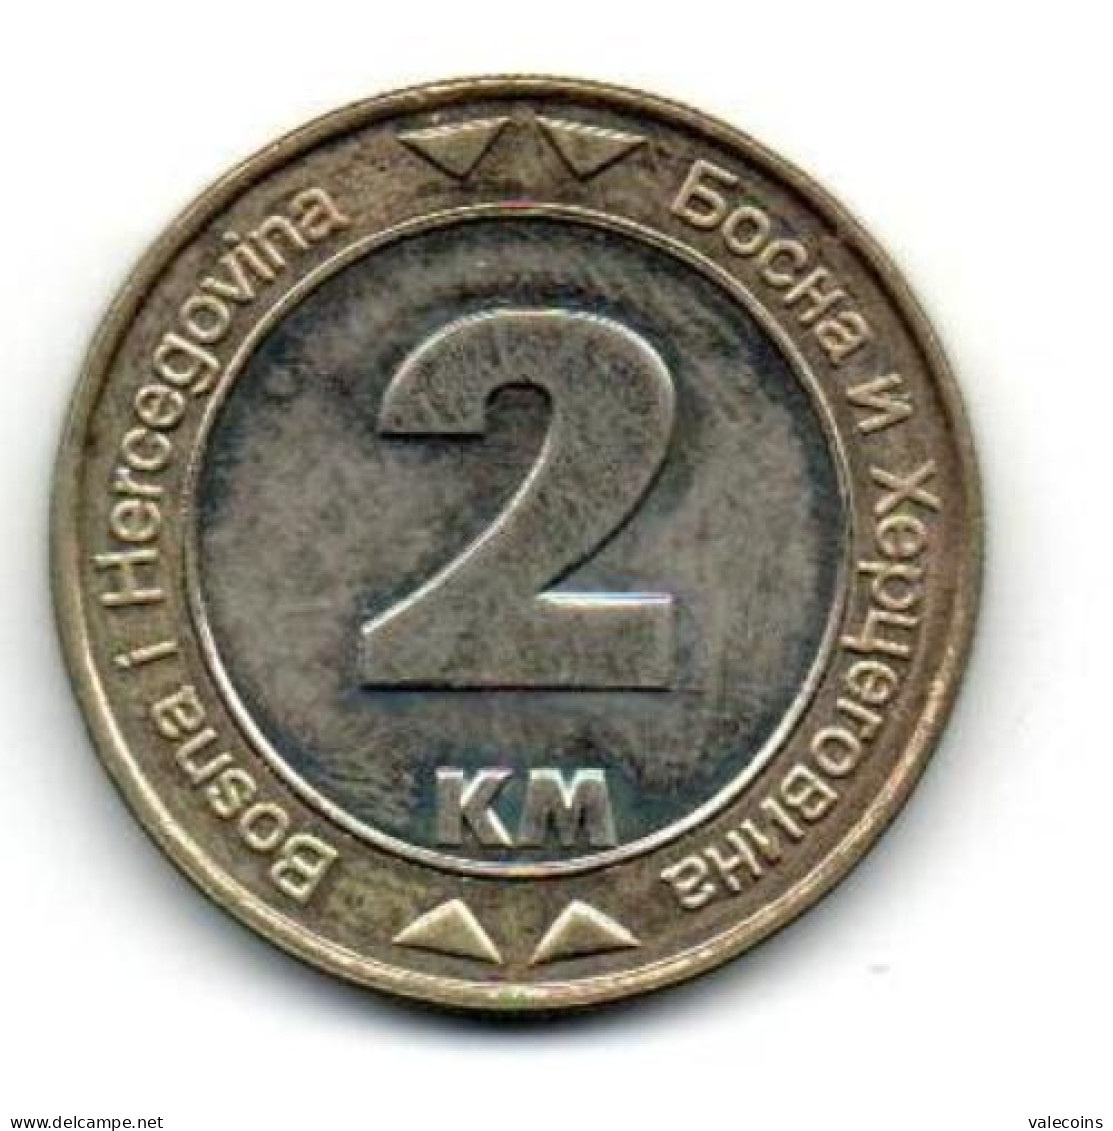 BOSNIA HERZEGOVINA - 2008 - 2 Marka - KM 119 AUNC Coin - Bosnia Y Herzegovina